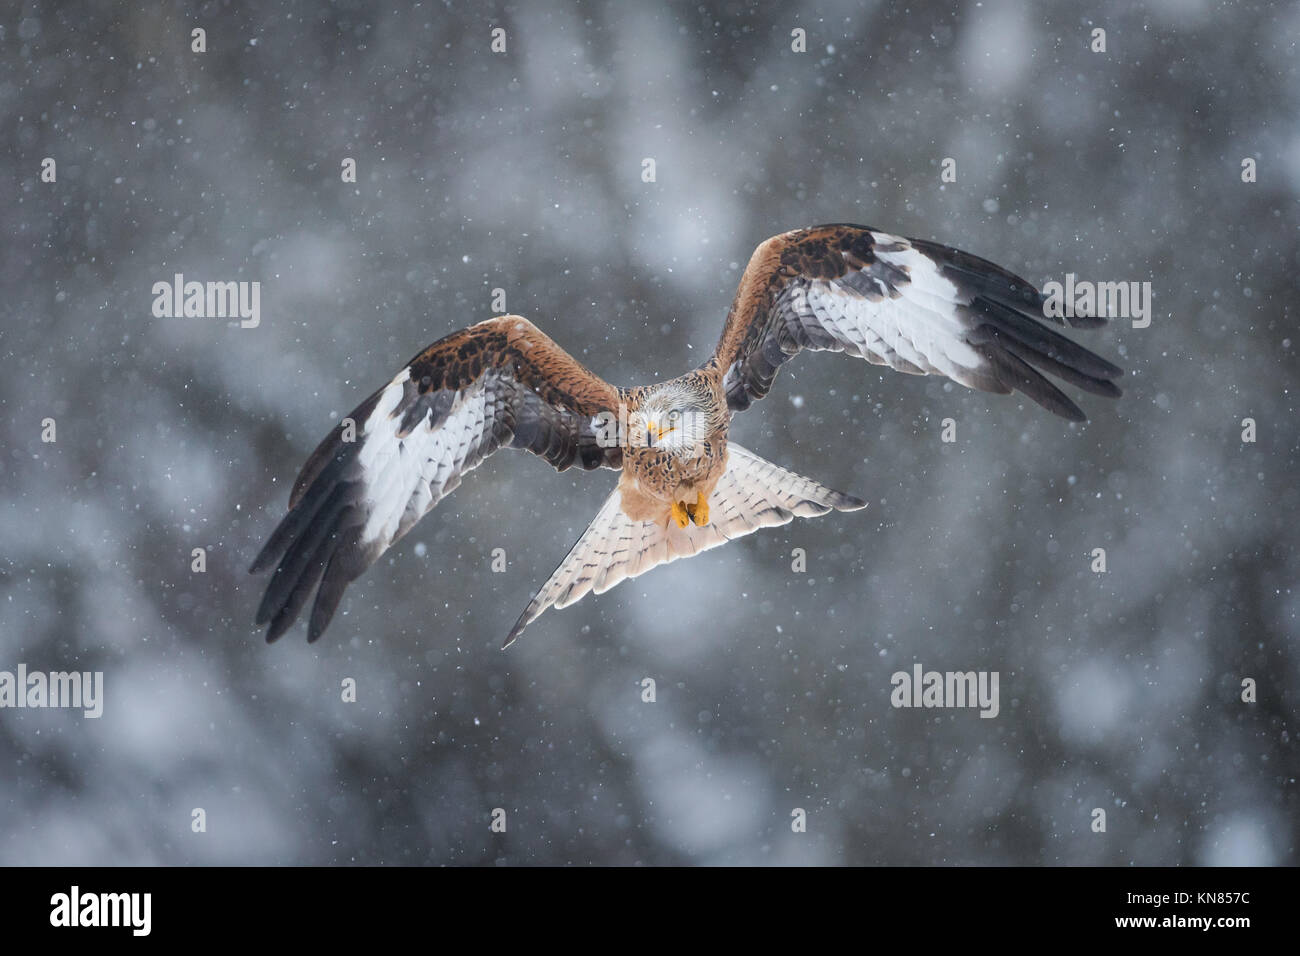 Nibbio reale (Milvus milvus) volando attraverso la nevicata. Rhayader, Wales, Regno Unito - Dicembre Foto Stock